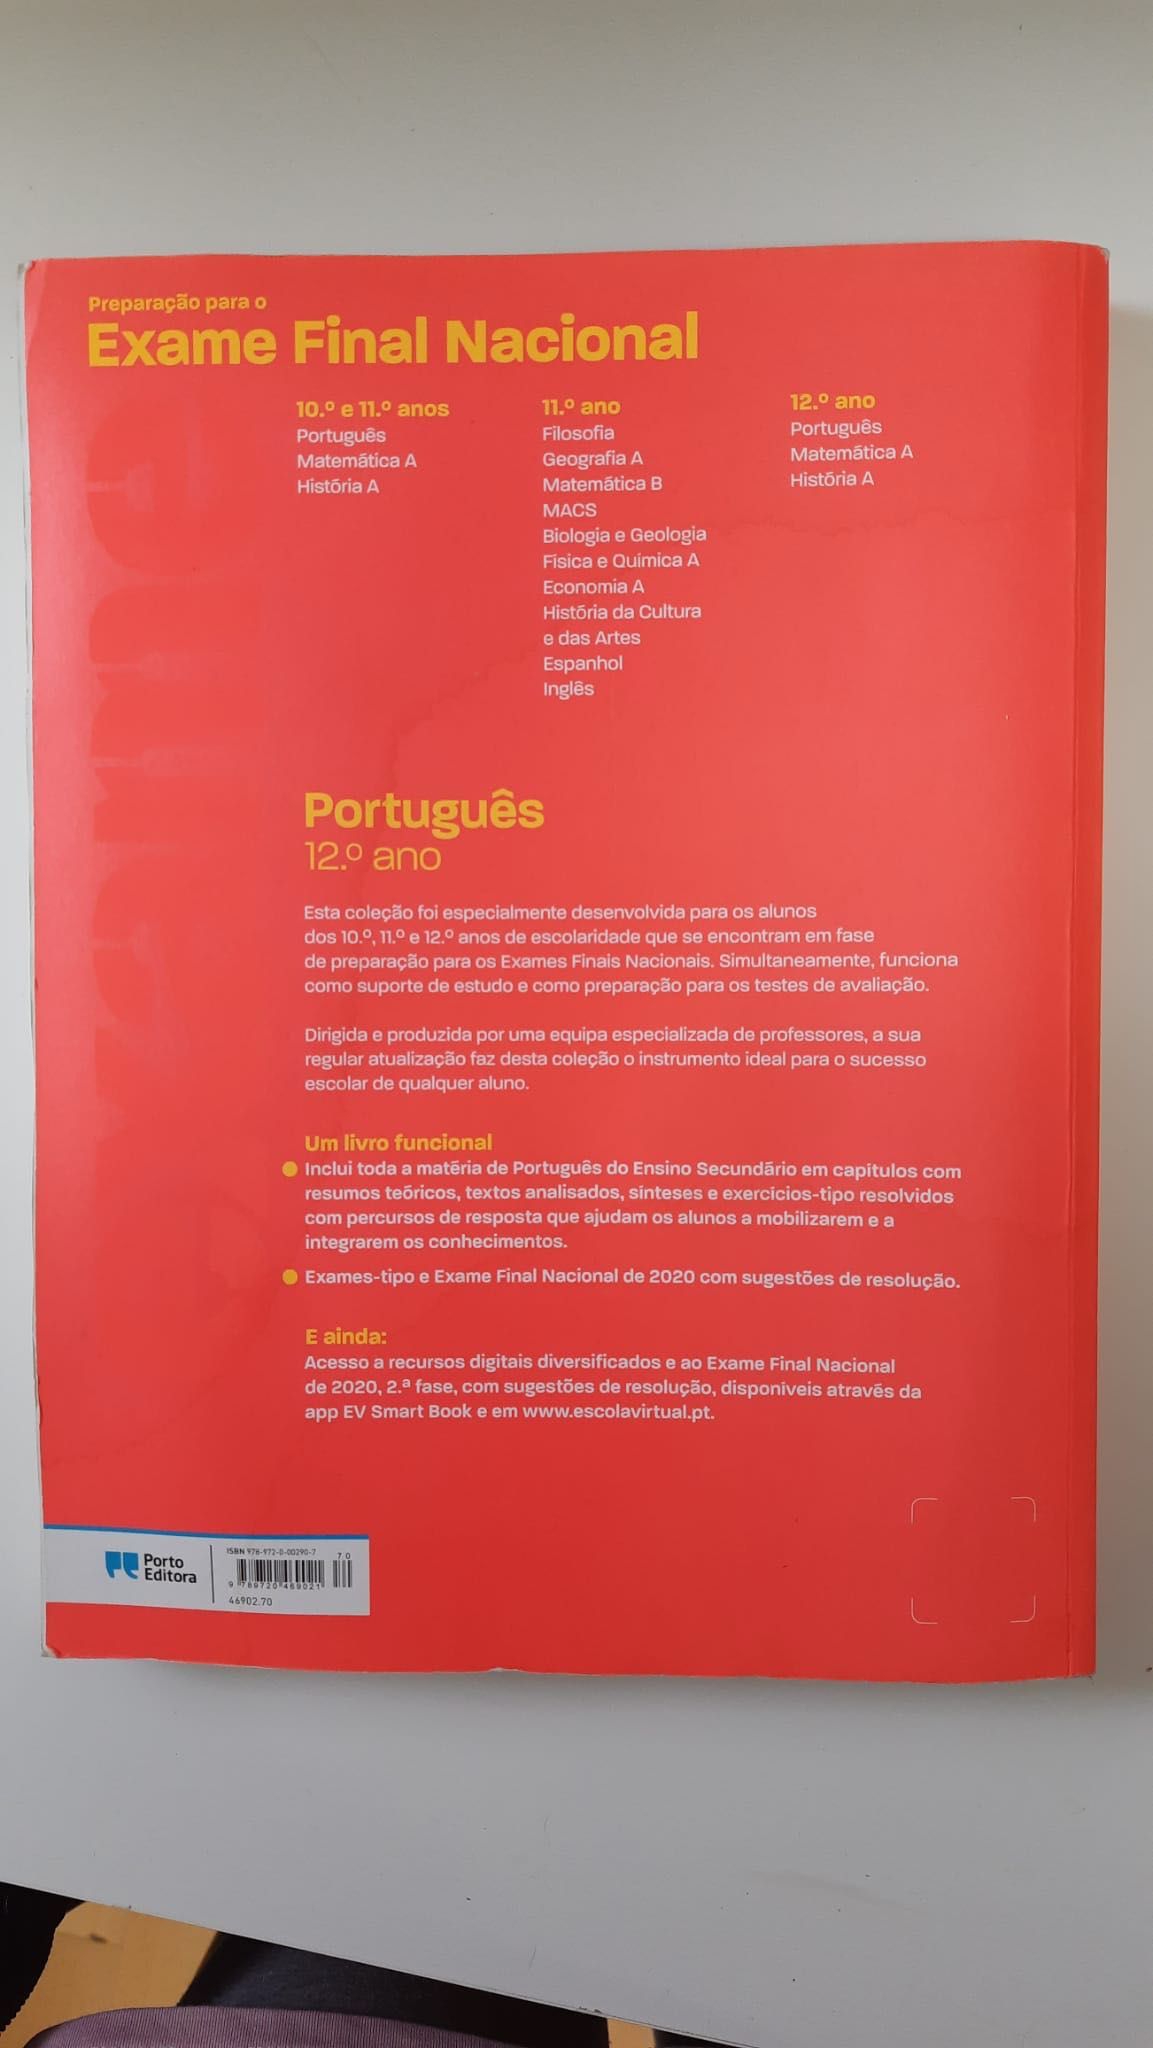 Livro de preparação para exame de Português - Porto Editora - 12 ano